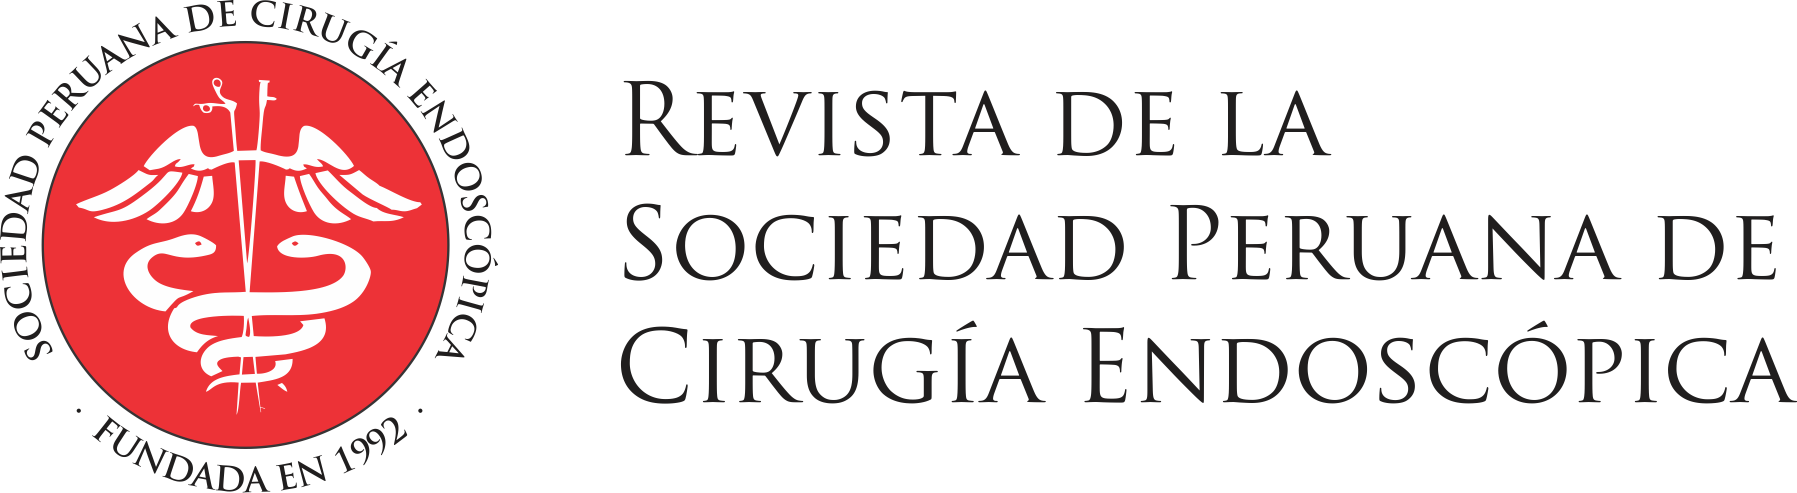 Revista de la Sociedad Peruana de Cirugía Endoscópica